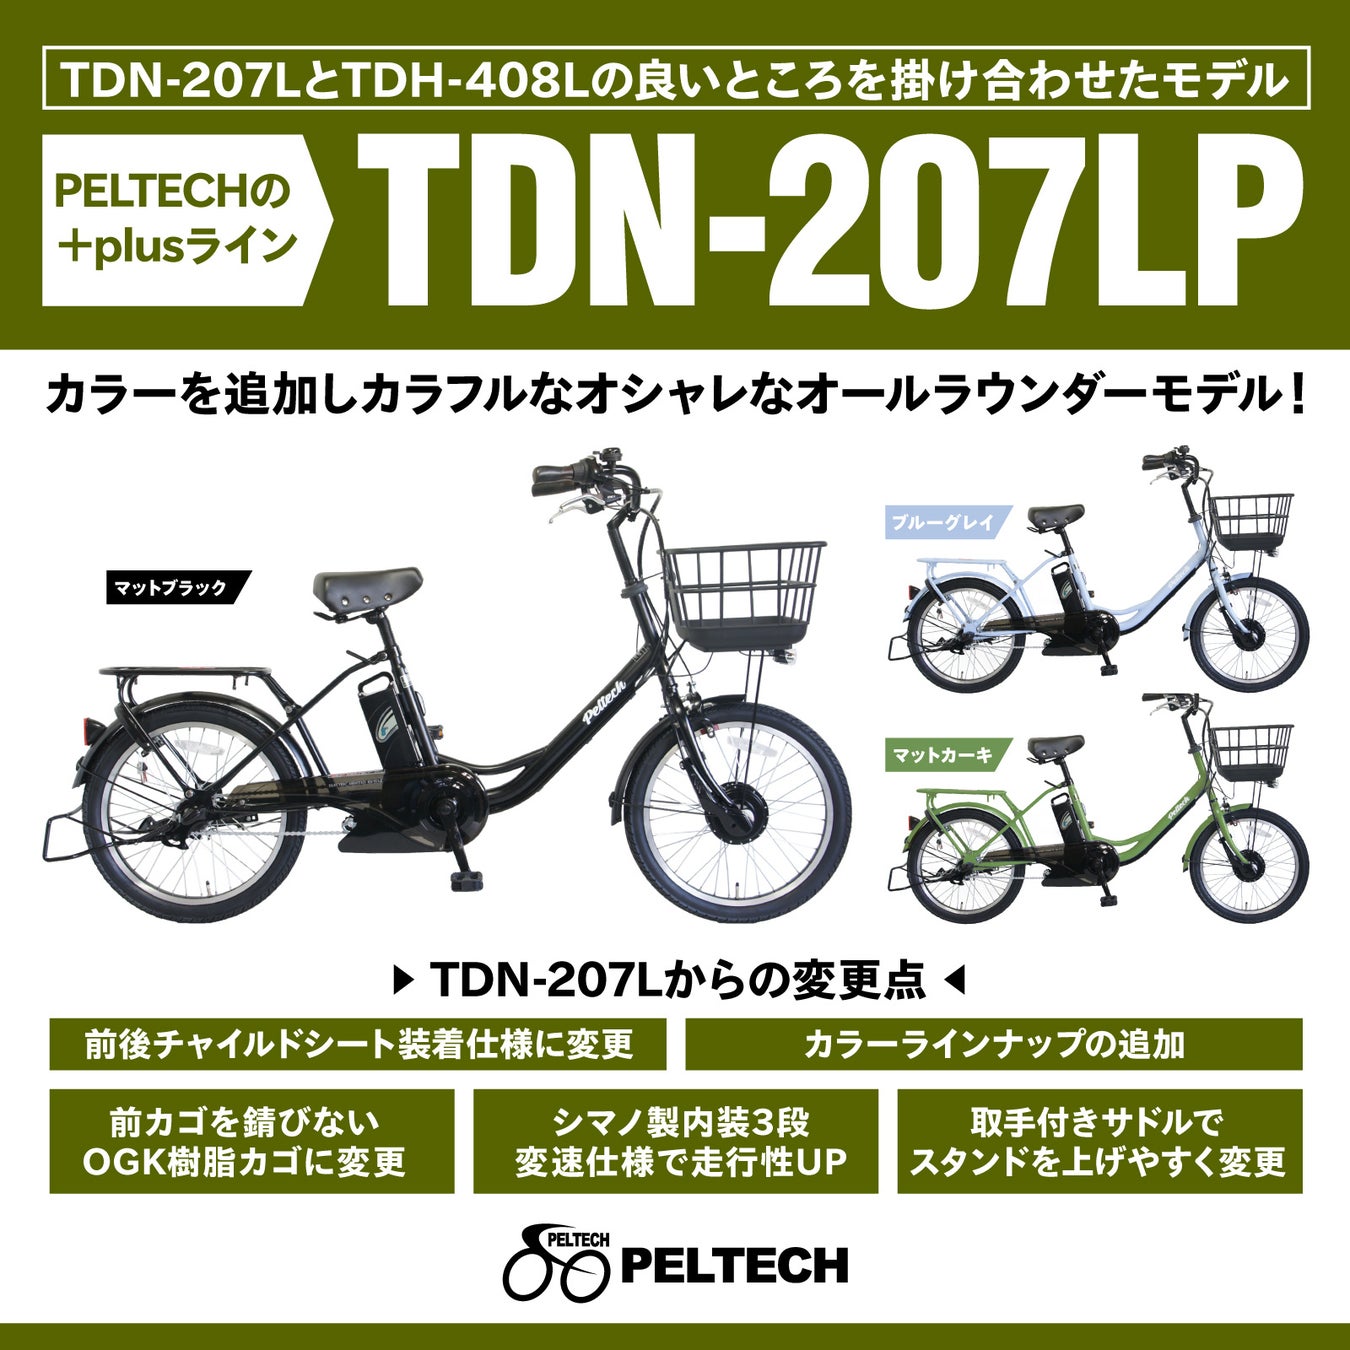 自転車のまち大阪堺発！コスパ良い電動アシスト自転車ブランド「PELTECH」が新製品「TDN-207Lplus＋」を発売しますのサブ画像2